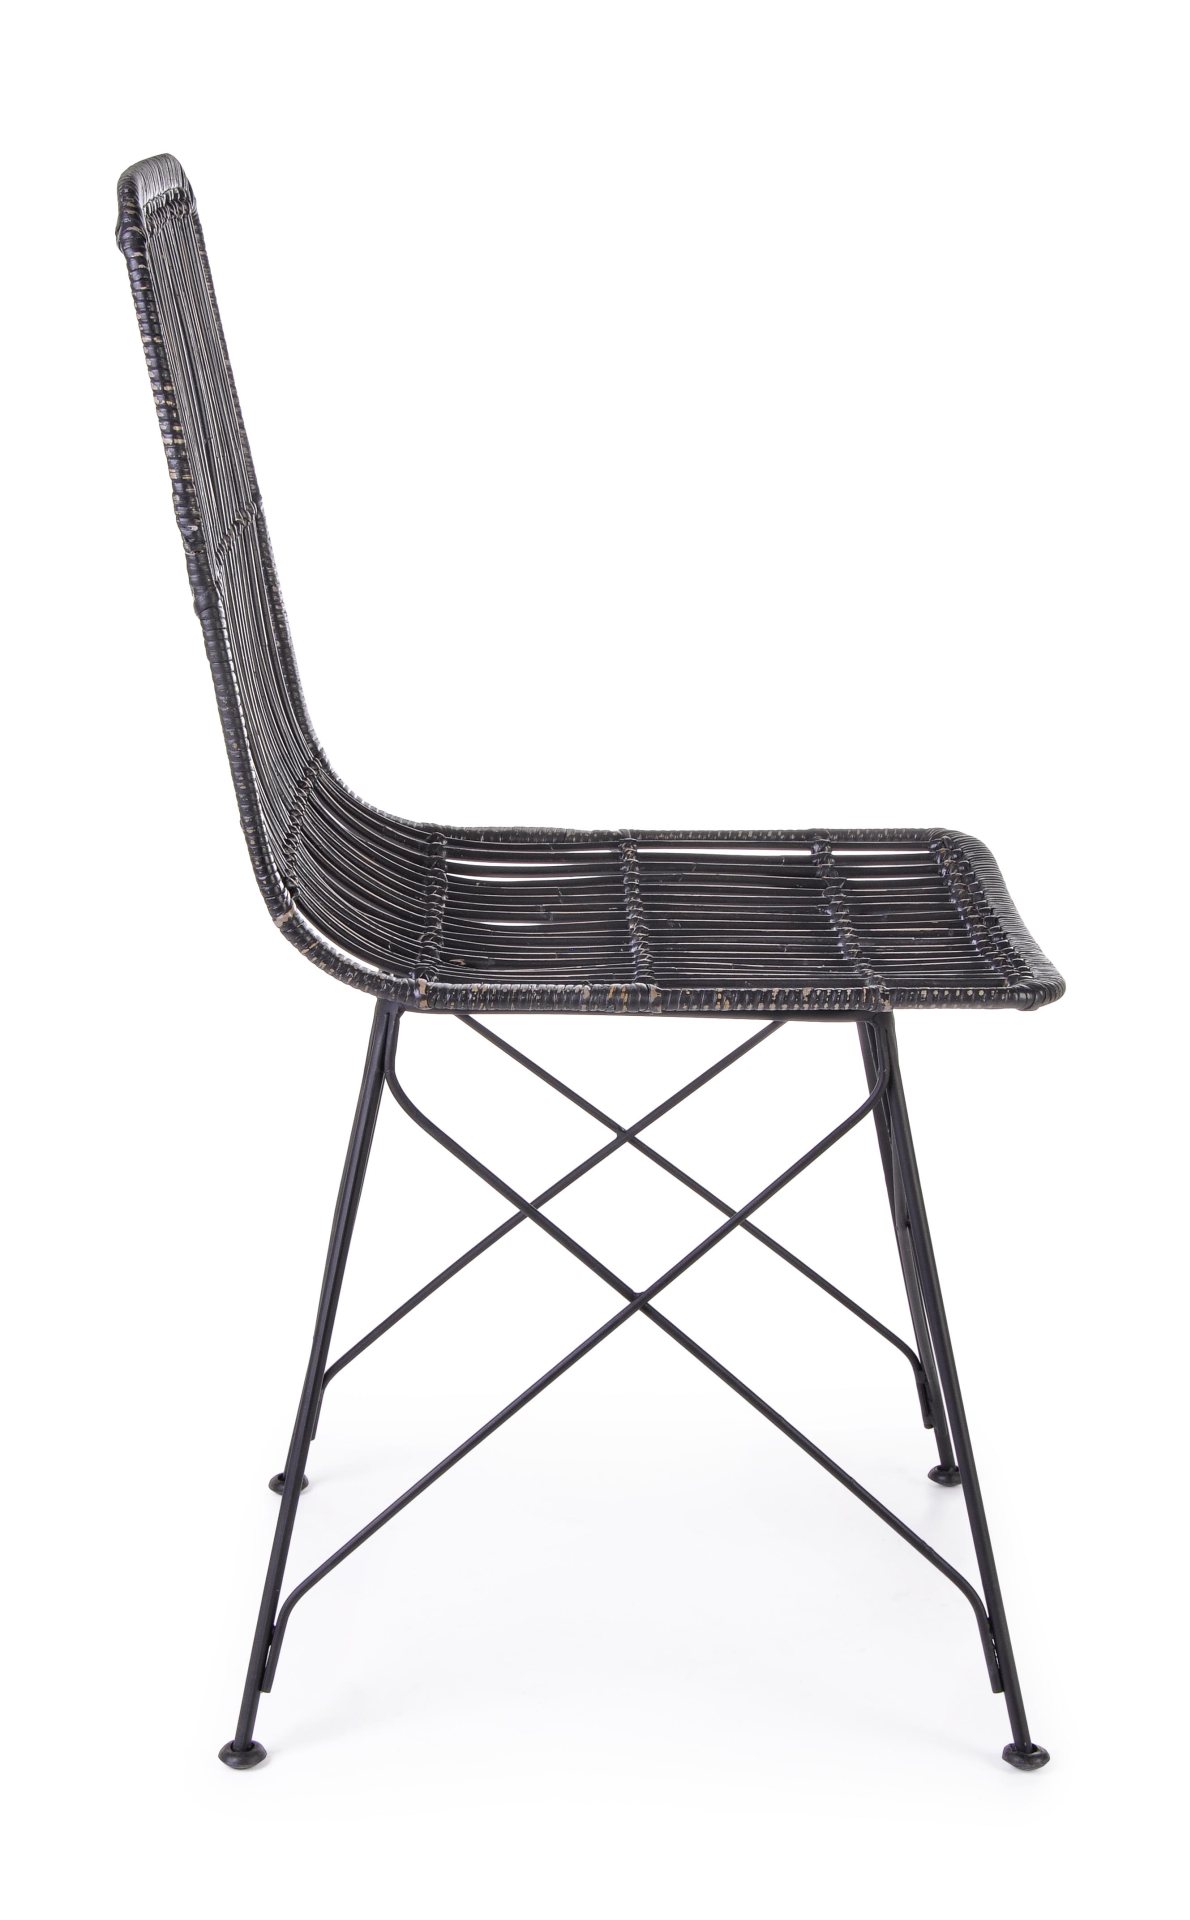 Der Stuhl Lucila Kabu überzeugt mit seinem modernem Design.Gefertigt wurde der Stuhl aus einem Kabugeflecht, welches einen schwarzen Farbton besitzt. Das Gestell ist aus Metall und hat eine Schwarze Farbe. Die Sitzhöhe beträgt 45 cm.